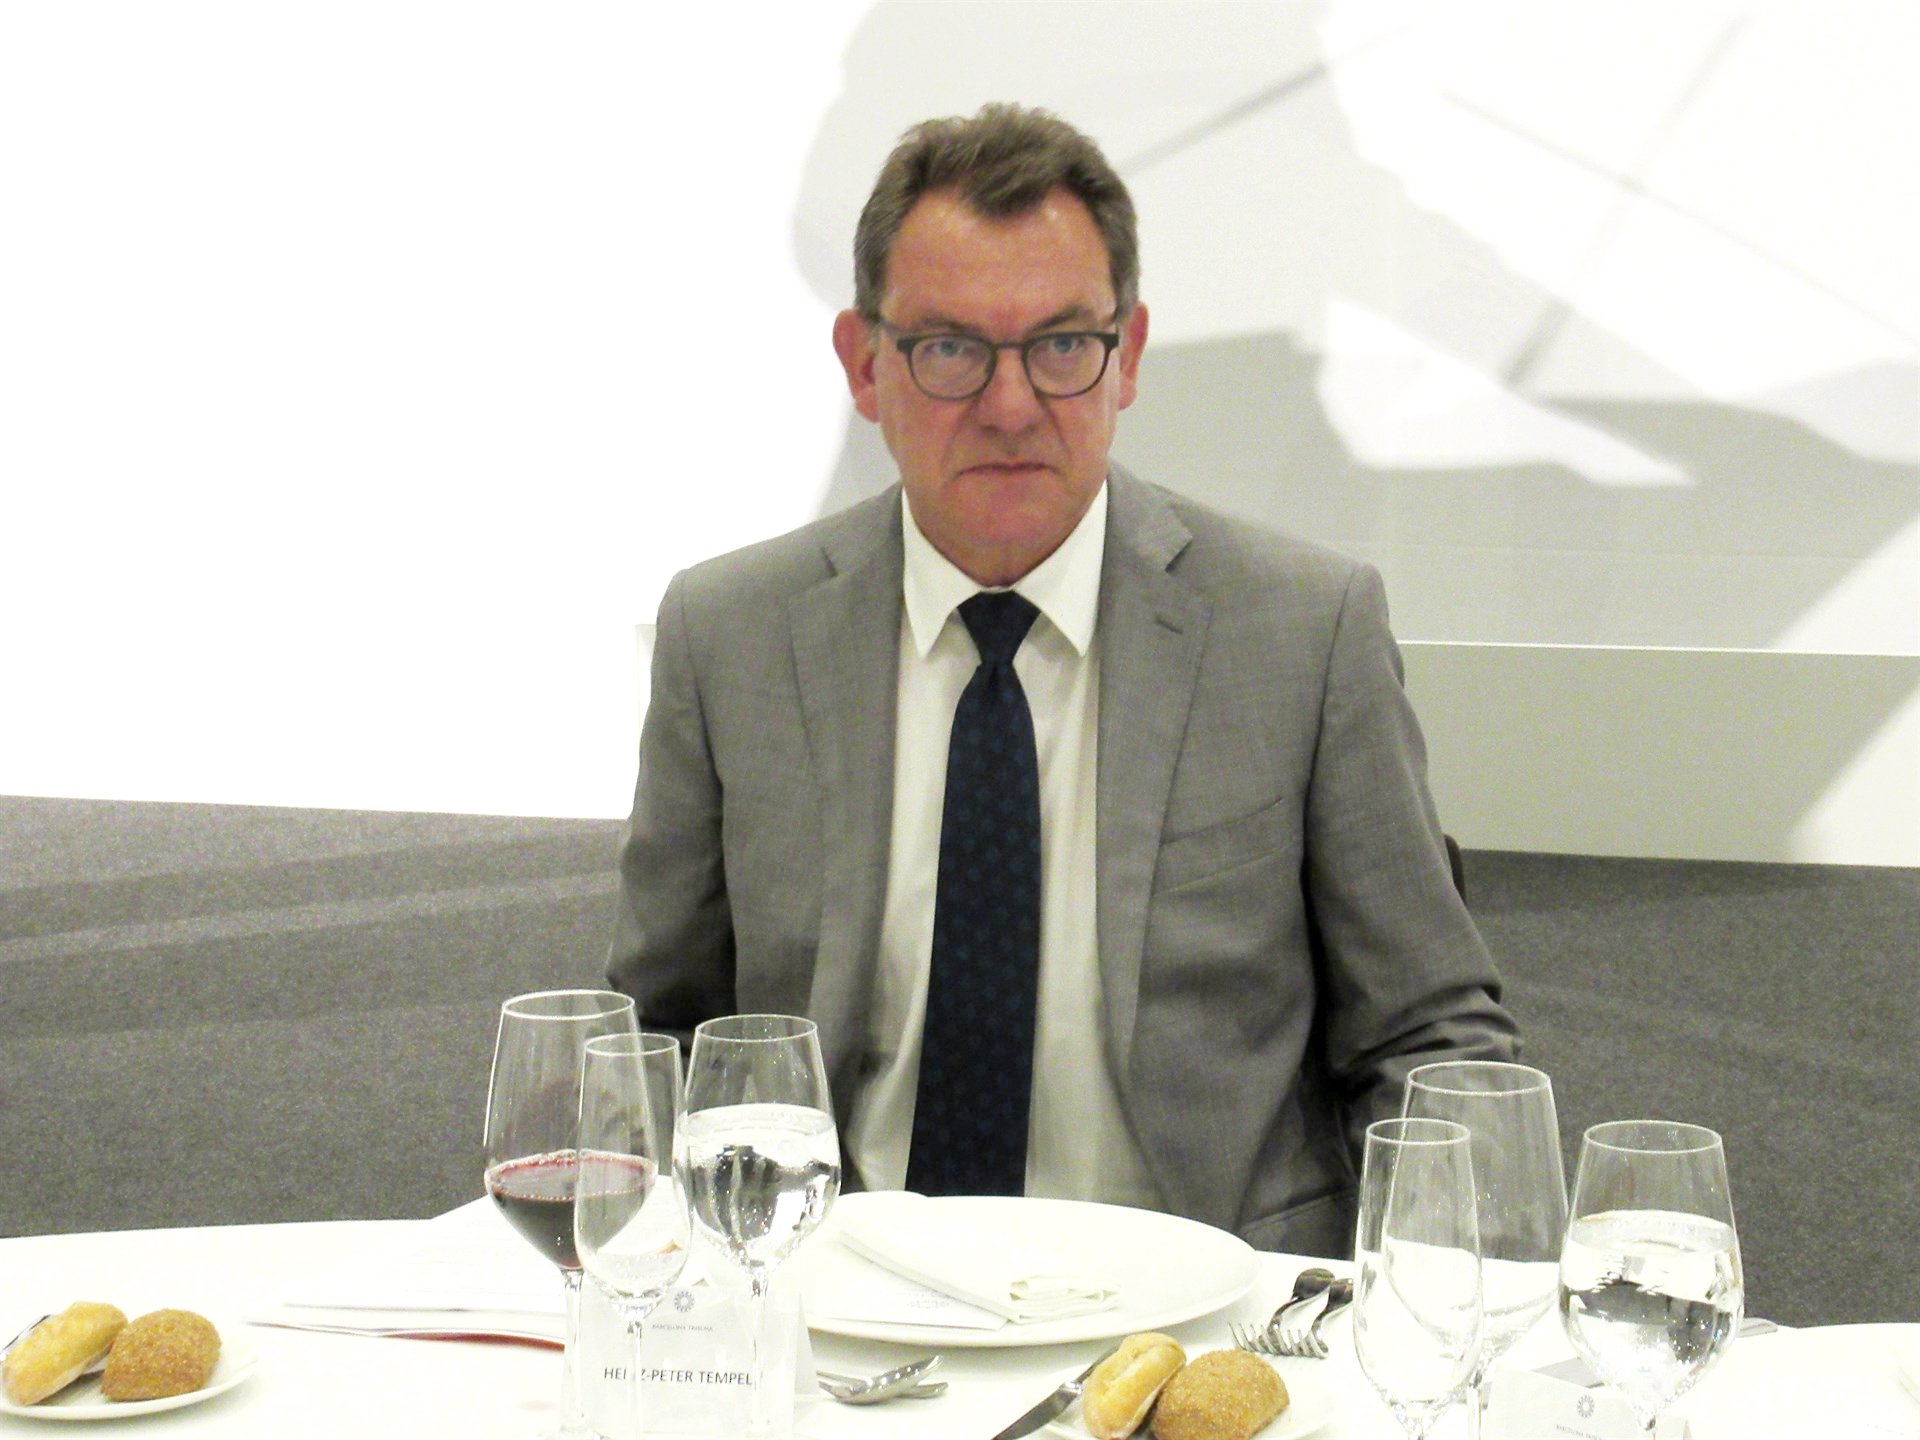 L'ambaixador alemany nega "cap recomanació" a Rajoy durant la repressió de l'1-O